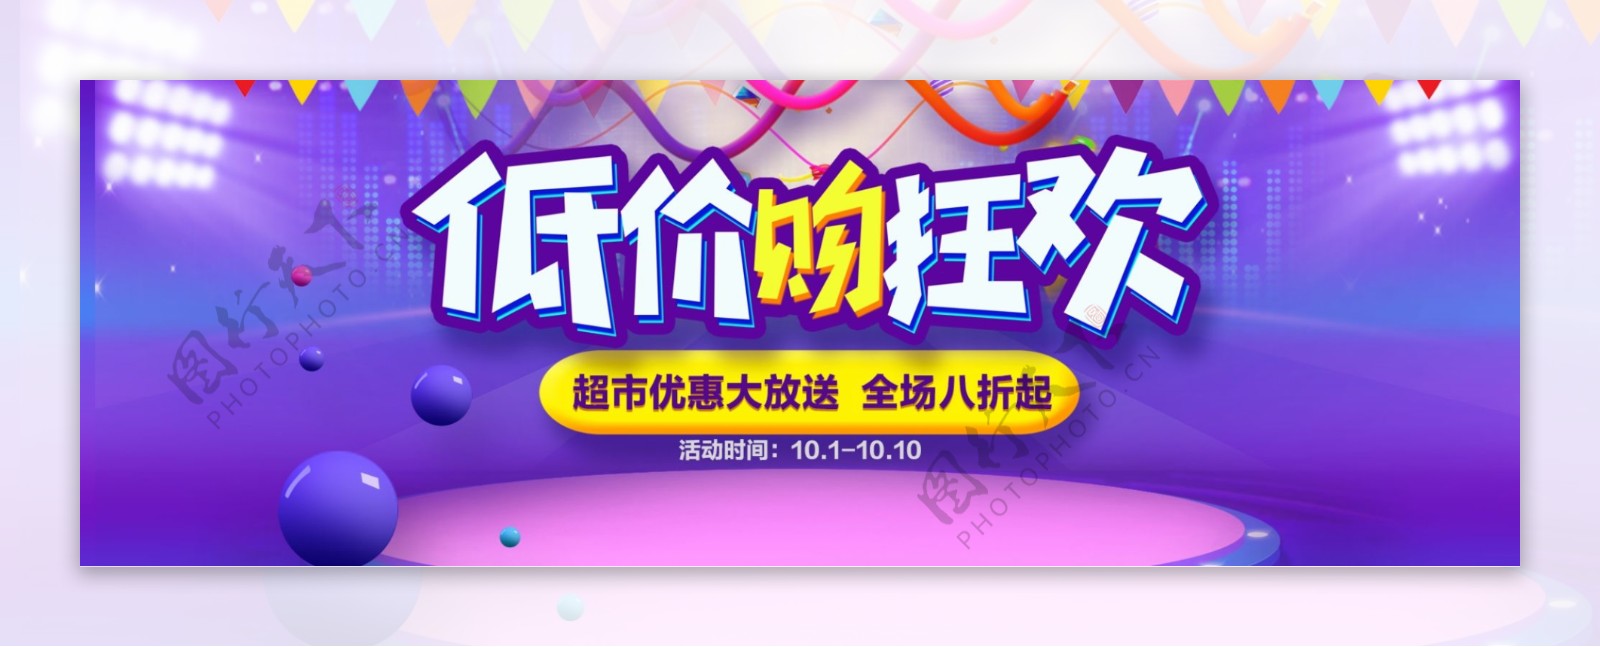 紫色灯光舞台炫酷电器超市促销电商海报banner淘宝